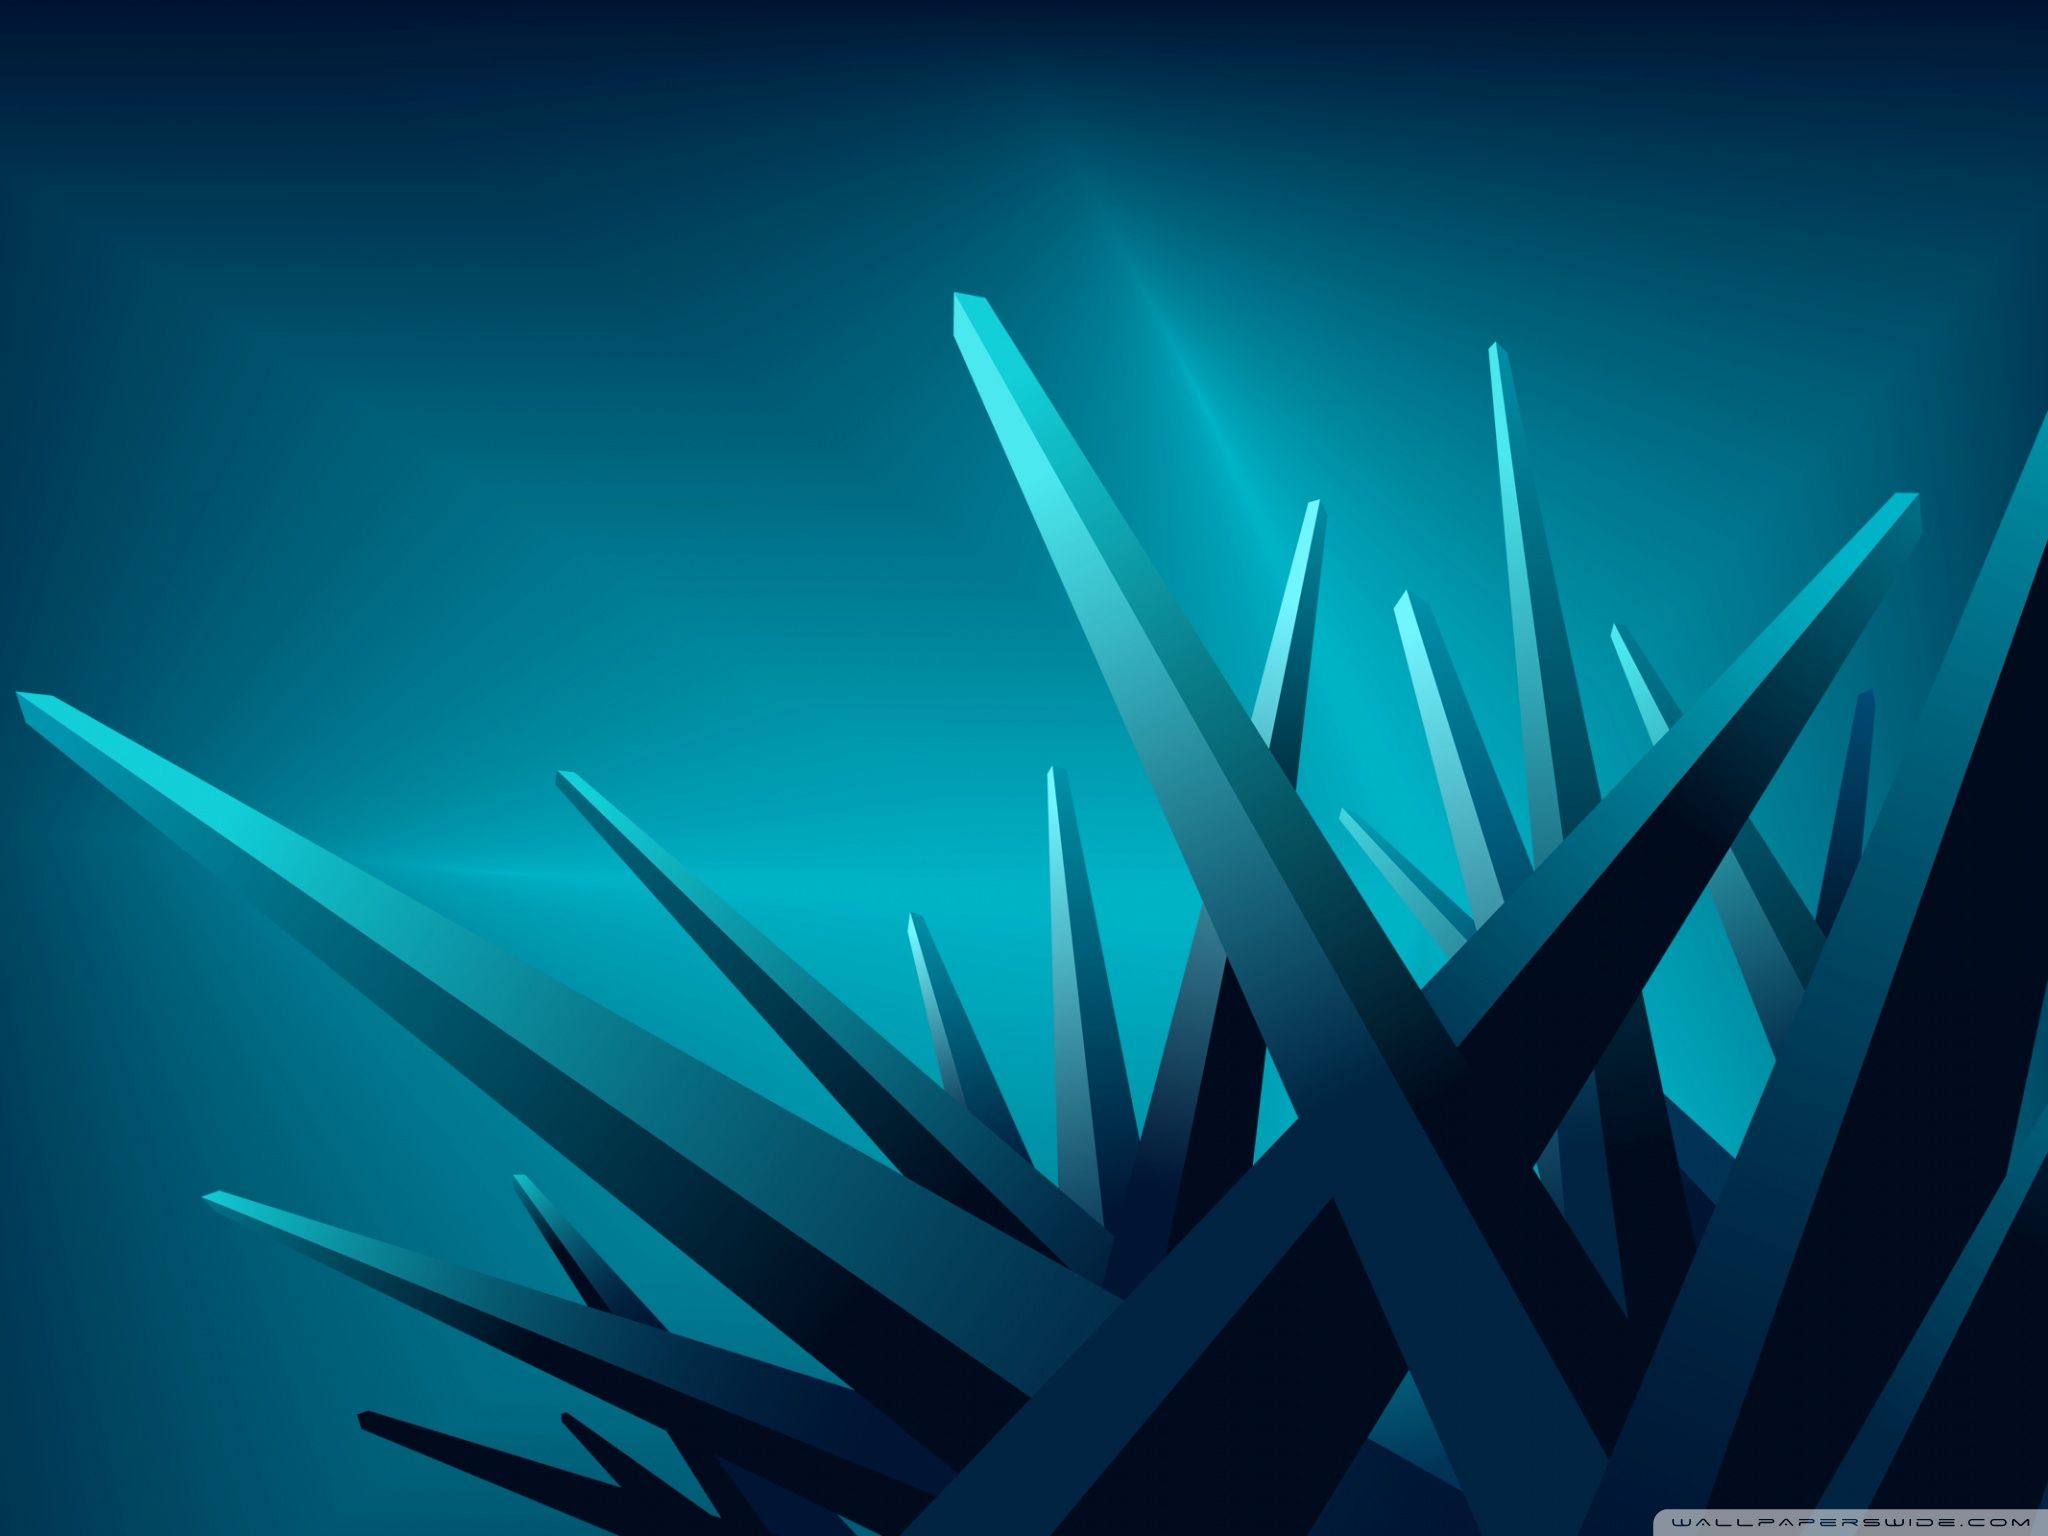 Blue 3D Crystals Ultra HD Desktop Background Wallpaper for 4K UHD TV, Tablet